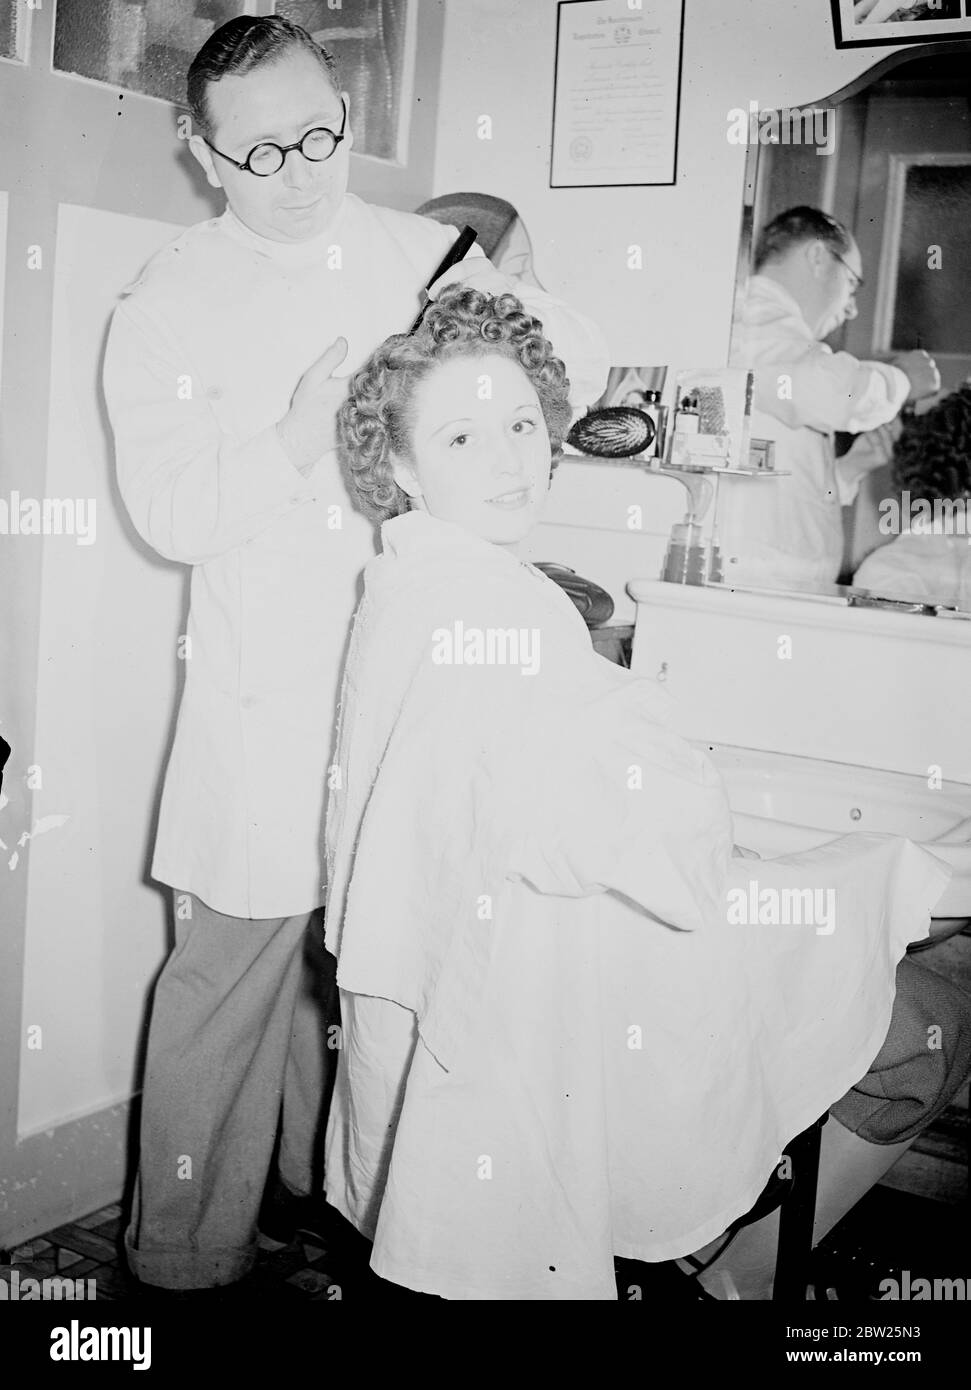 Usherette von 17 wählte Finchleys Schönheitskönigin. Nachdem sie sich für einen Schönheitswettbewerb eingeschrieben hatte, ohne es ihrem Vater zu sagen, wurde Miss Joan Edwards von Hendon, eine 17 Jahre alte Kinomusherette, zur Beauty Queen of Finchley gewählt. Foto zeigt, dass Miss Joan Edwards ihre Haare in Vorbereitung auf ihre Krönung heute (Samstag) betreut. 30 Juli 1938 Stockfoto